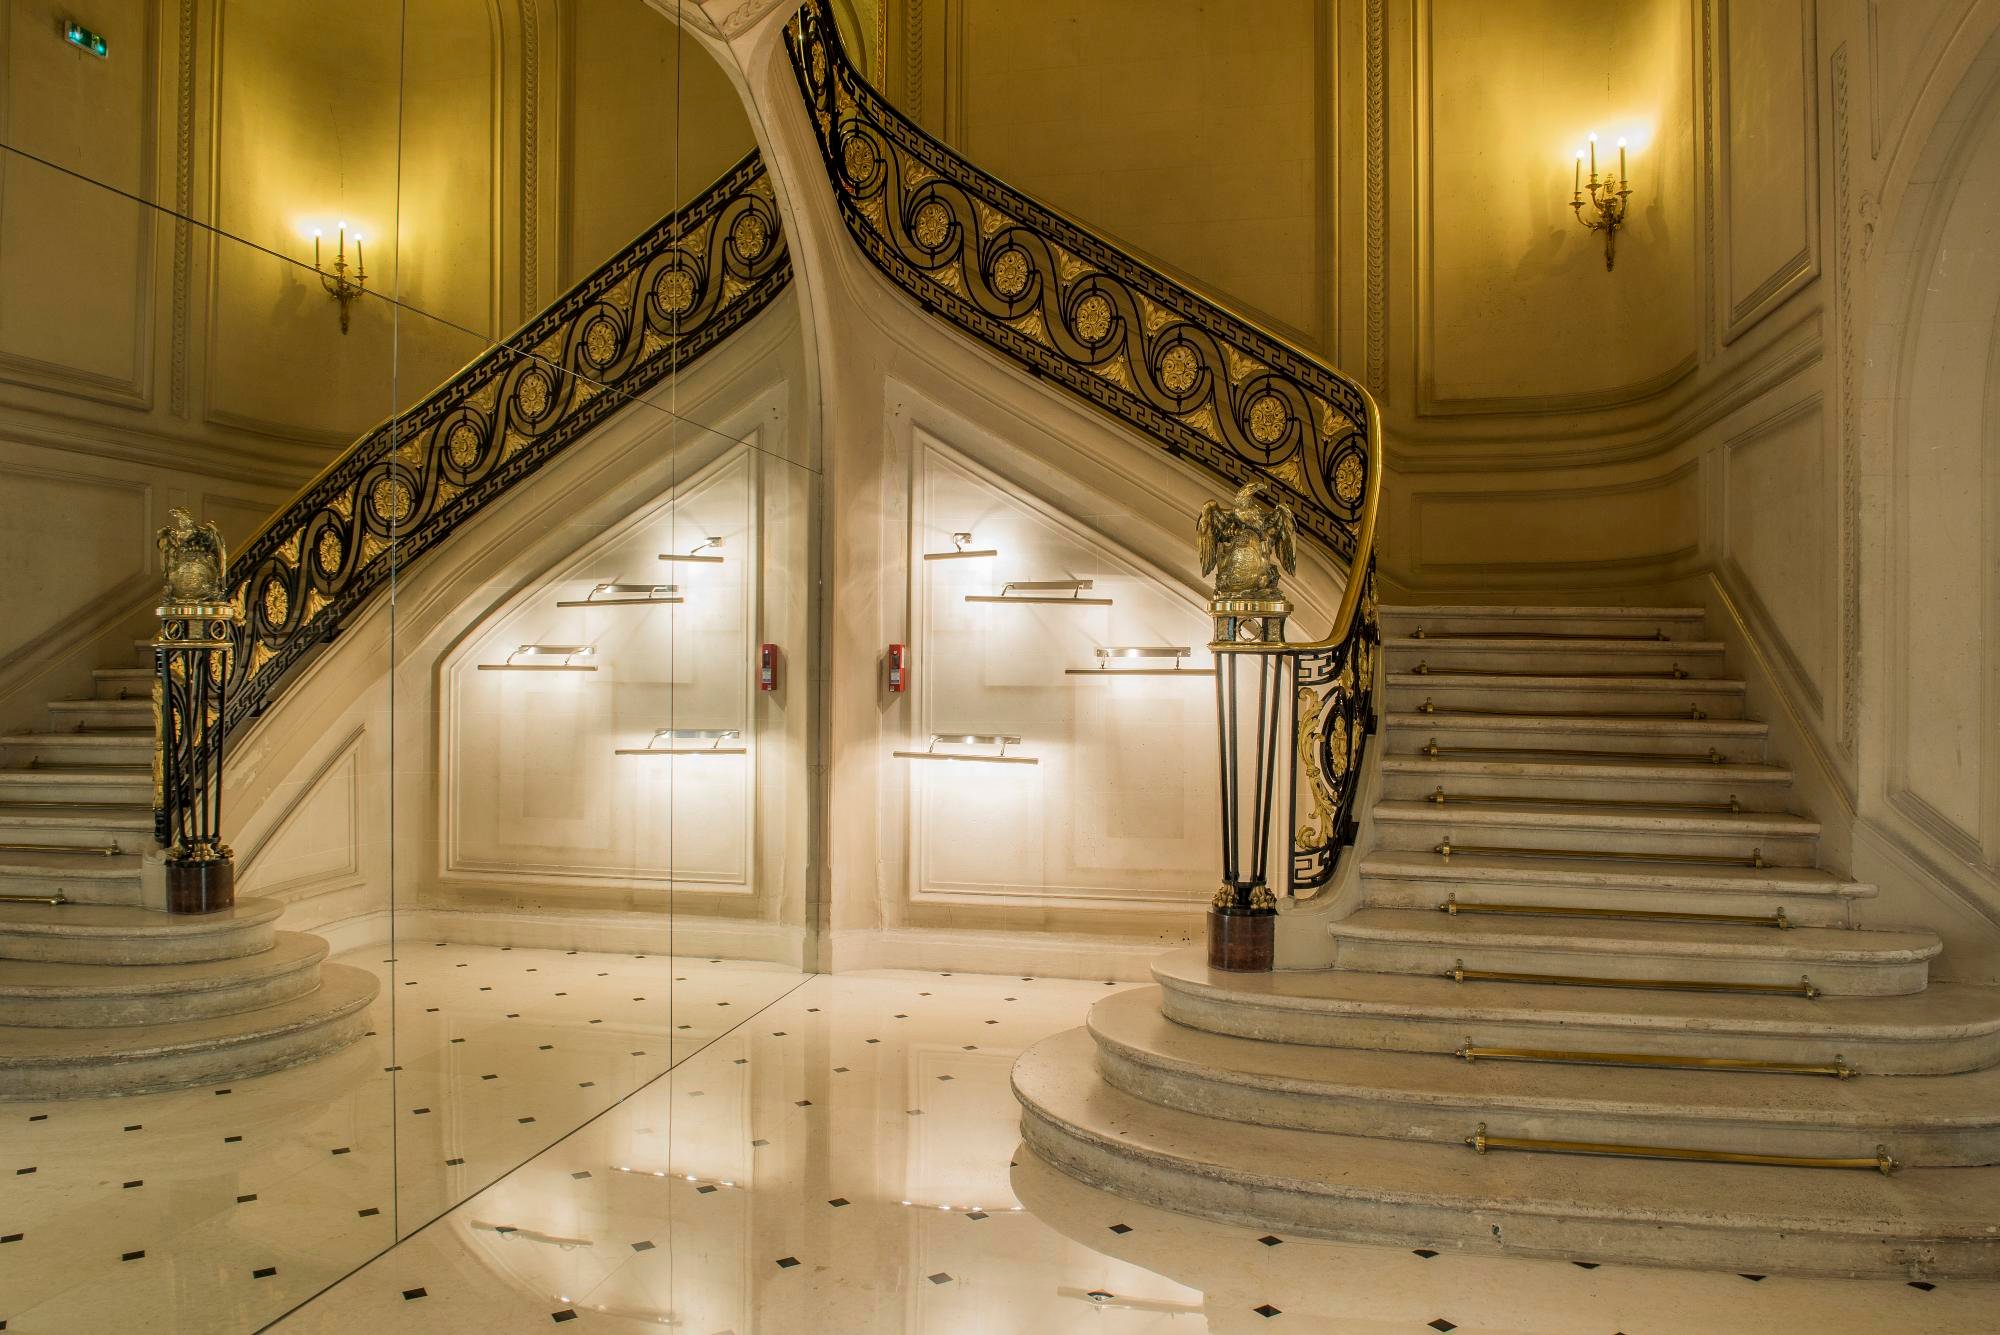 Galeries Lafayette Champs Elysées - Hotel Chambiges Elysées Paris ****, OFFICIAL SITE